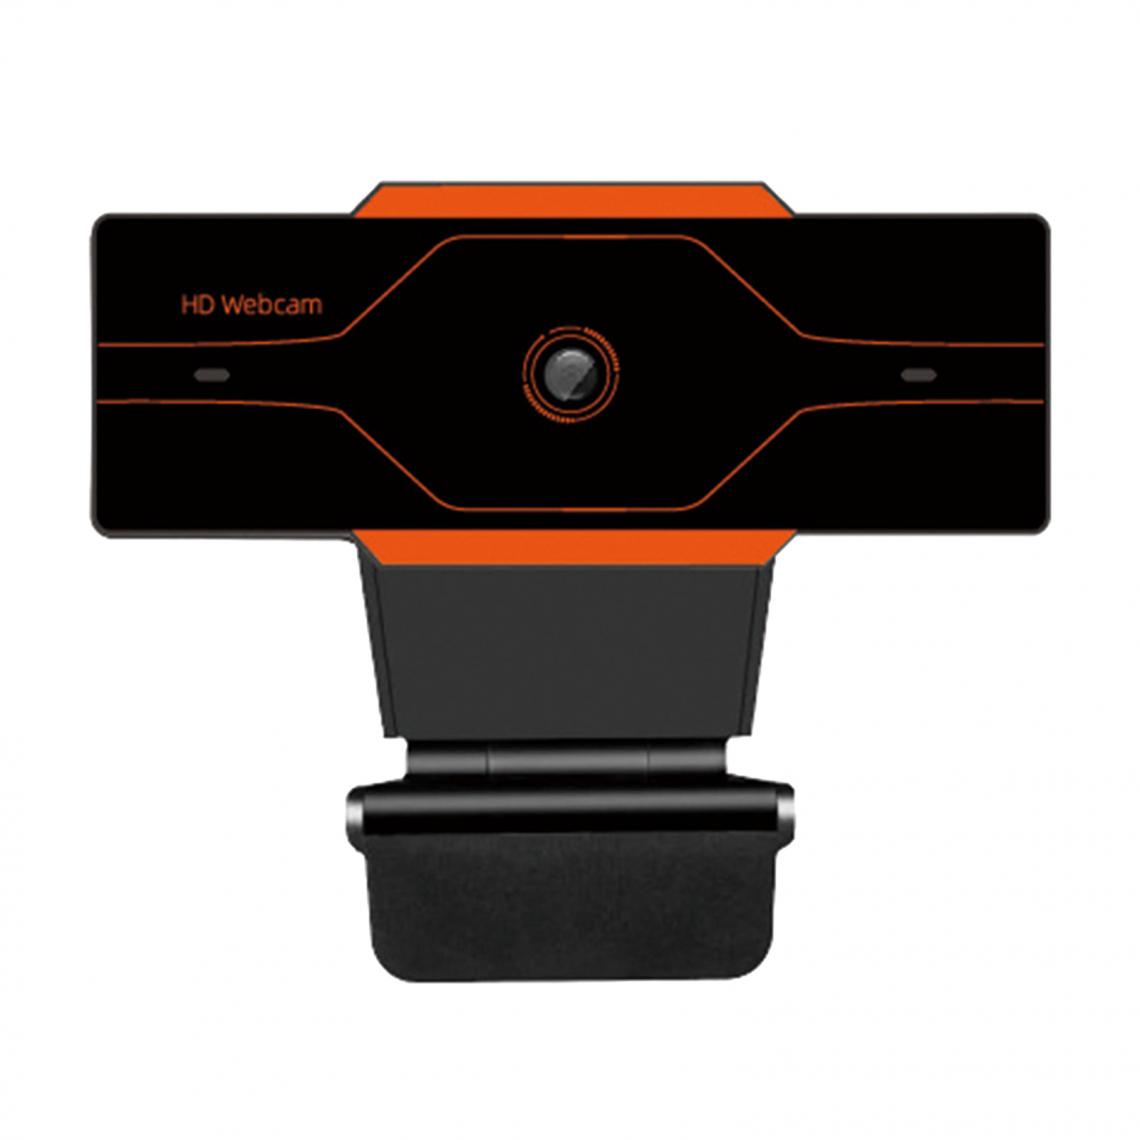 marque generique - Webcam HD Caméra Web Cam Microphone Pour Ordinateur Portable PC 720P Argent Avec Couvercle - Webcam